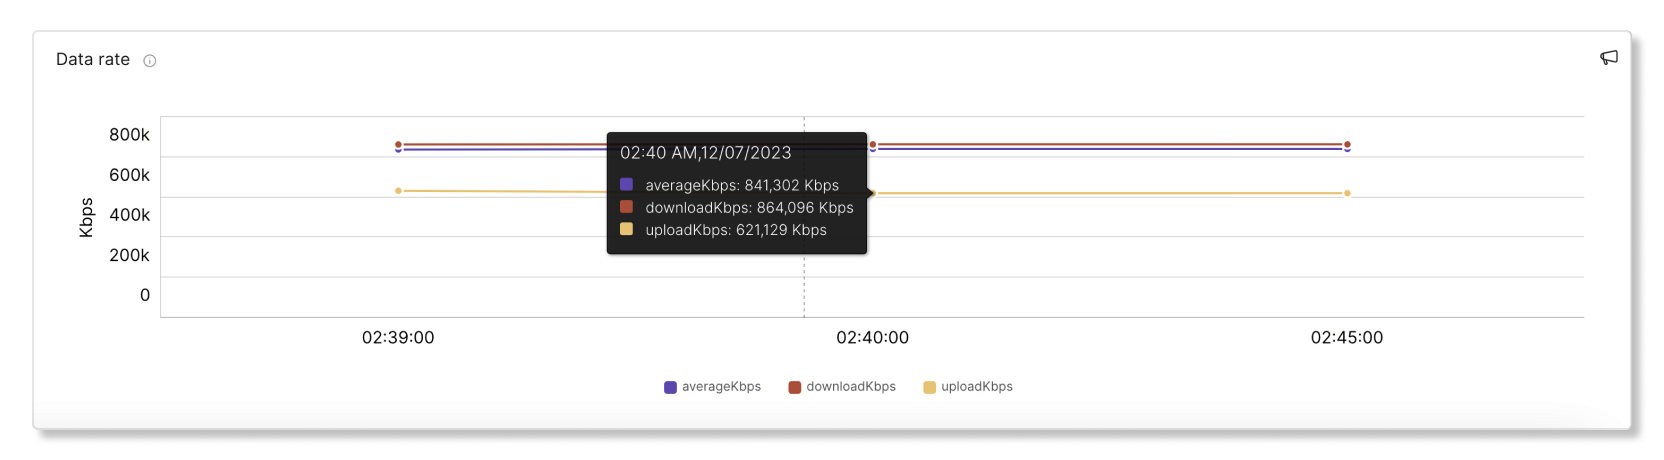 Графік швидкості передачі даних Meraki для усунення несправностей у Control Hub